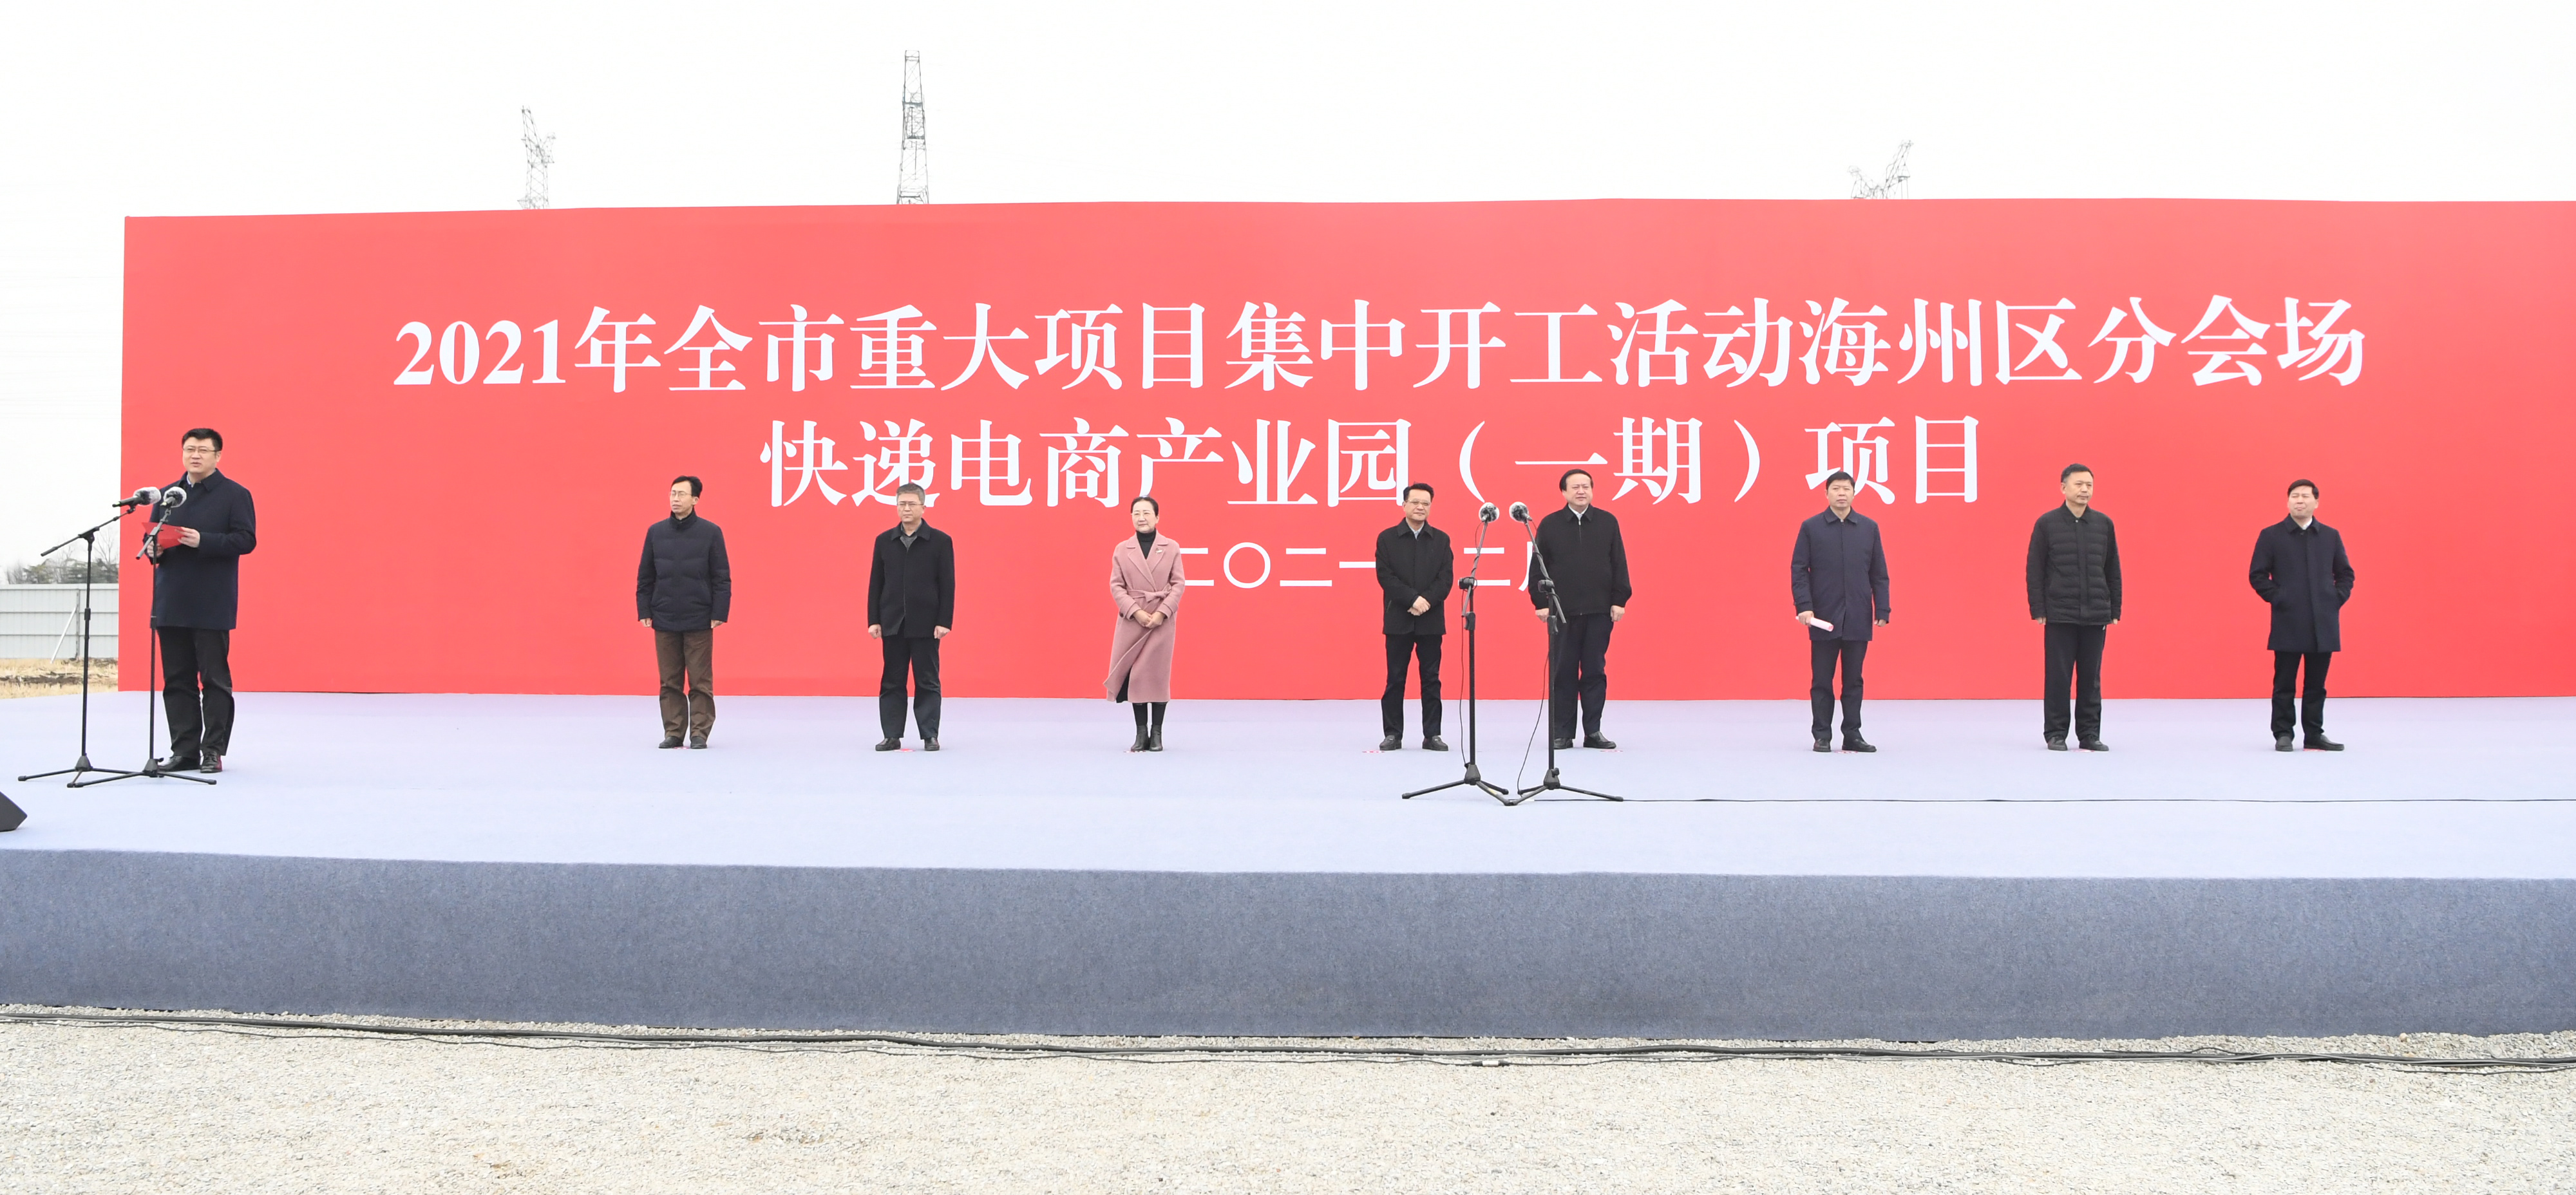 2021年2月26日 海州区大项目开工（朱兴波、李锋）3.jpg